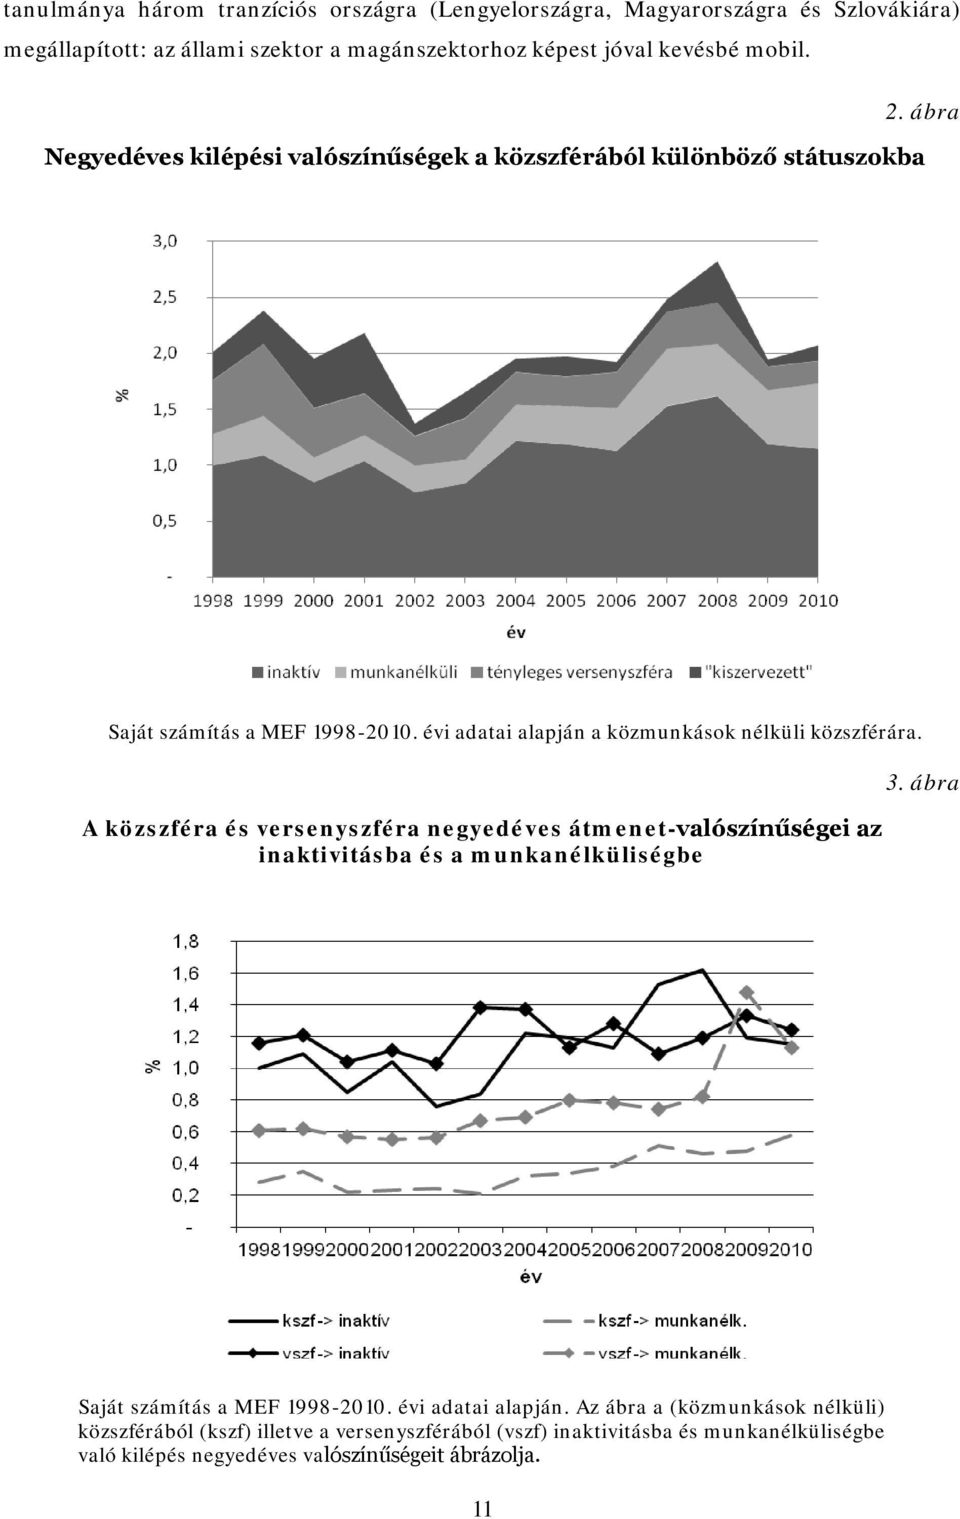 A közszféra és versenyszféra negyedéves átmenet-valószínűségei az inaktivitásba és a munkanélküliségbe 3. ábra Saját számítás a MEF 1998-2010. évi adatai alapján.